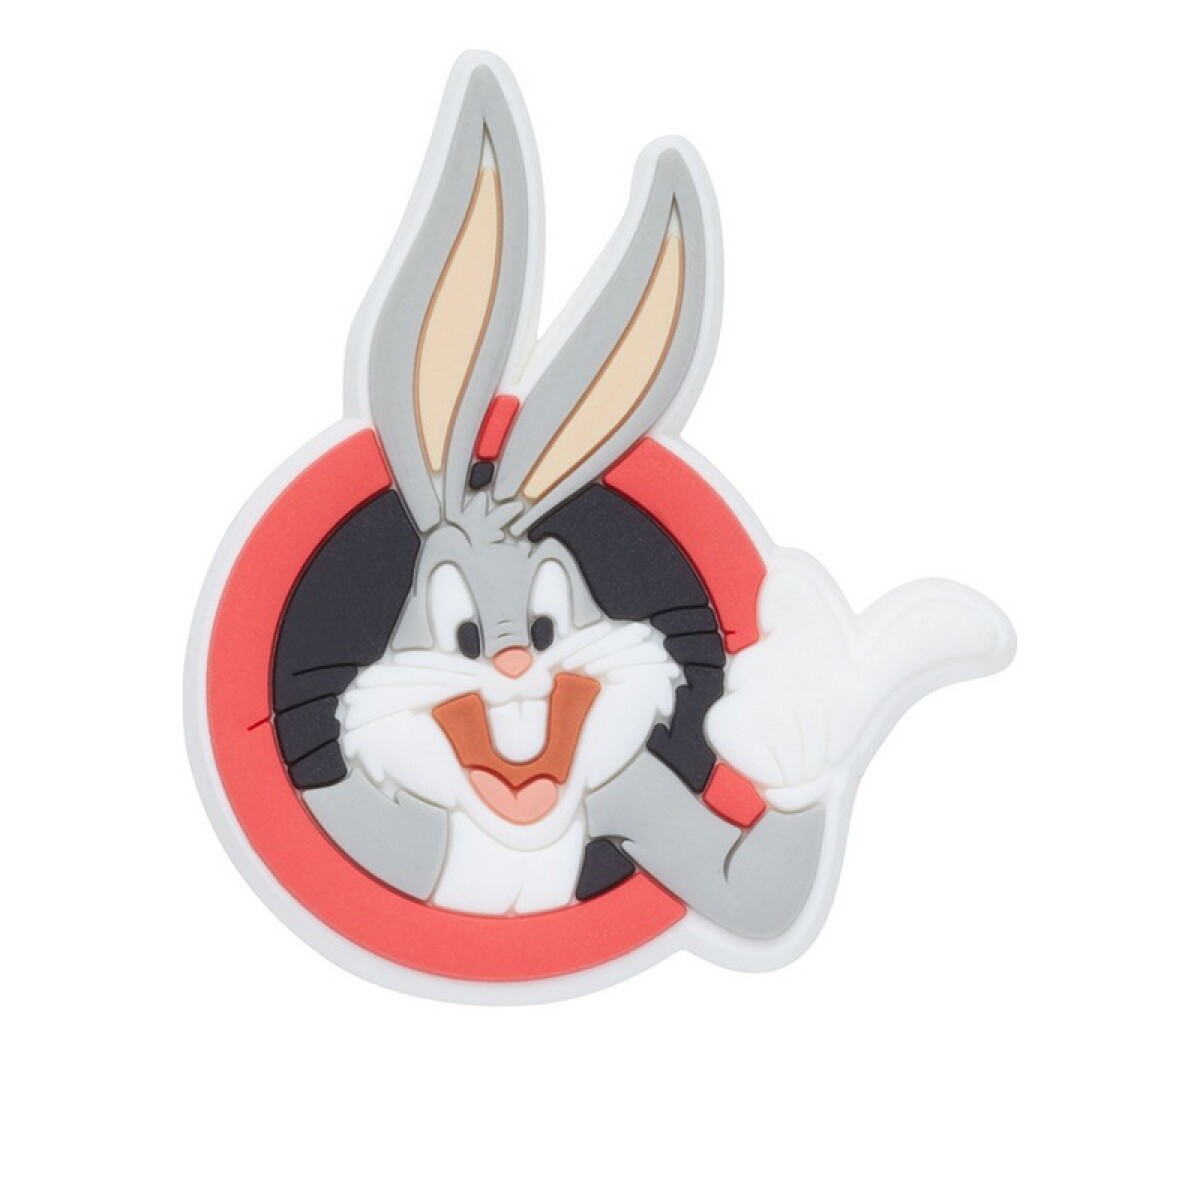 Jibbitz™ Charm Bugs Bunny - Multicolor 